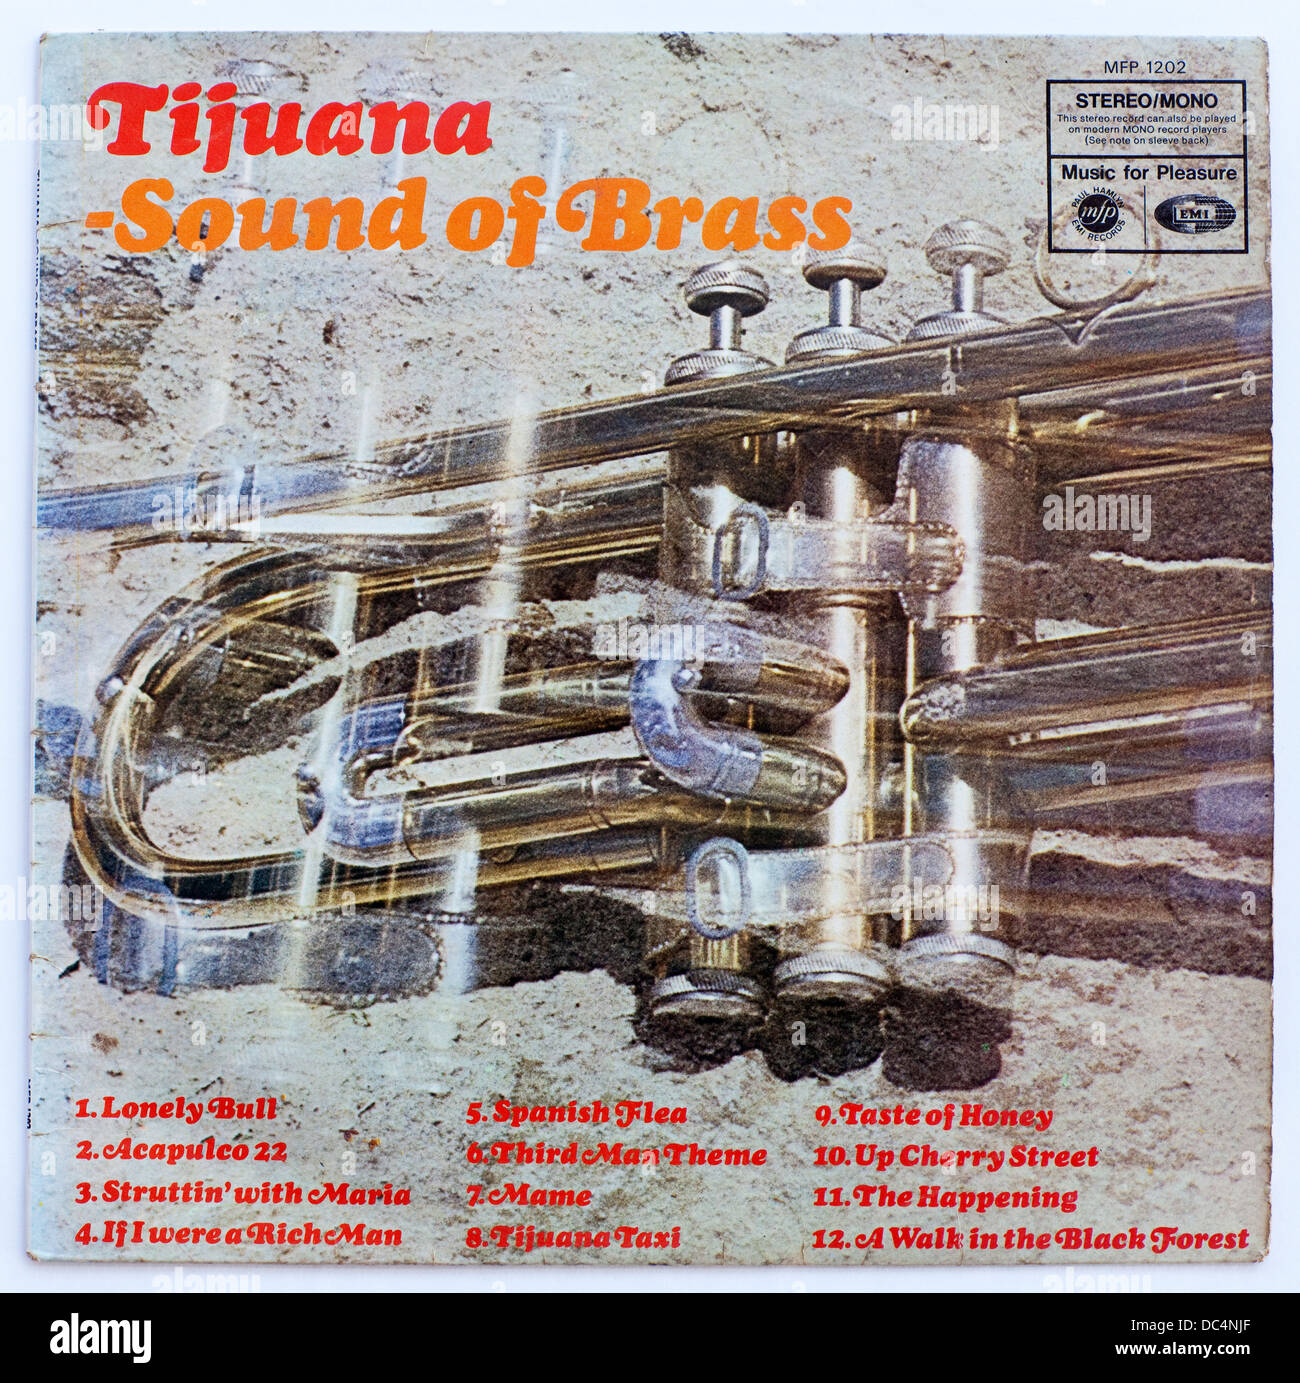 Tijuana - Sound of Brass, album del 1968 su Music for Pleasure - solo per uso editoriale Foto Stock